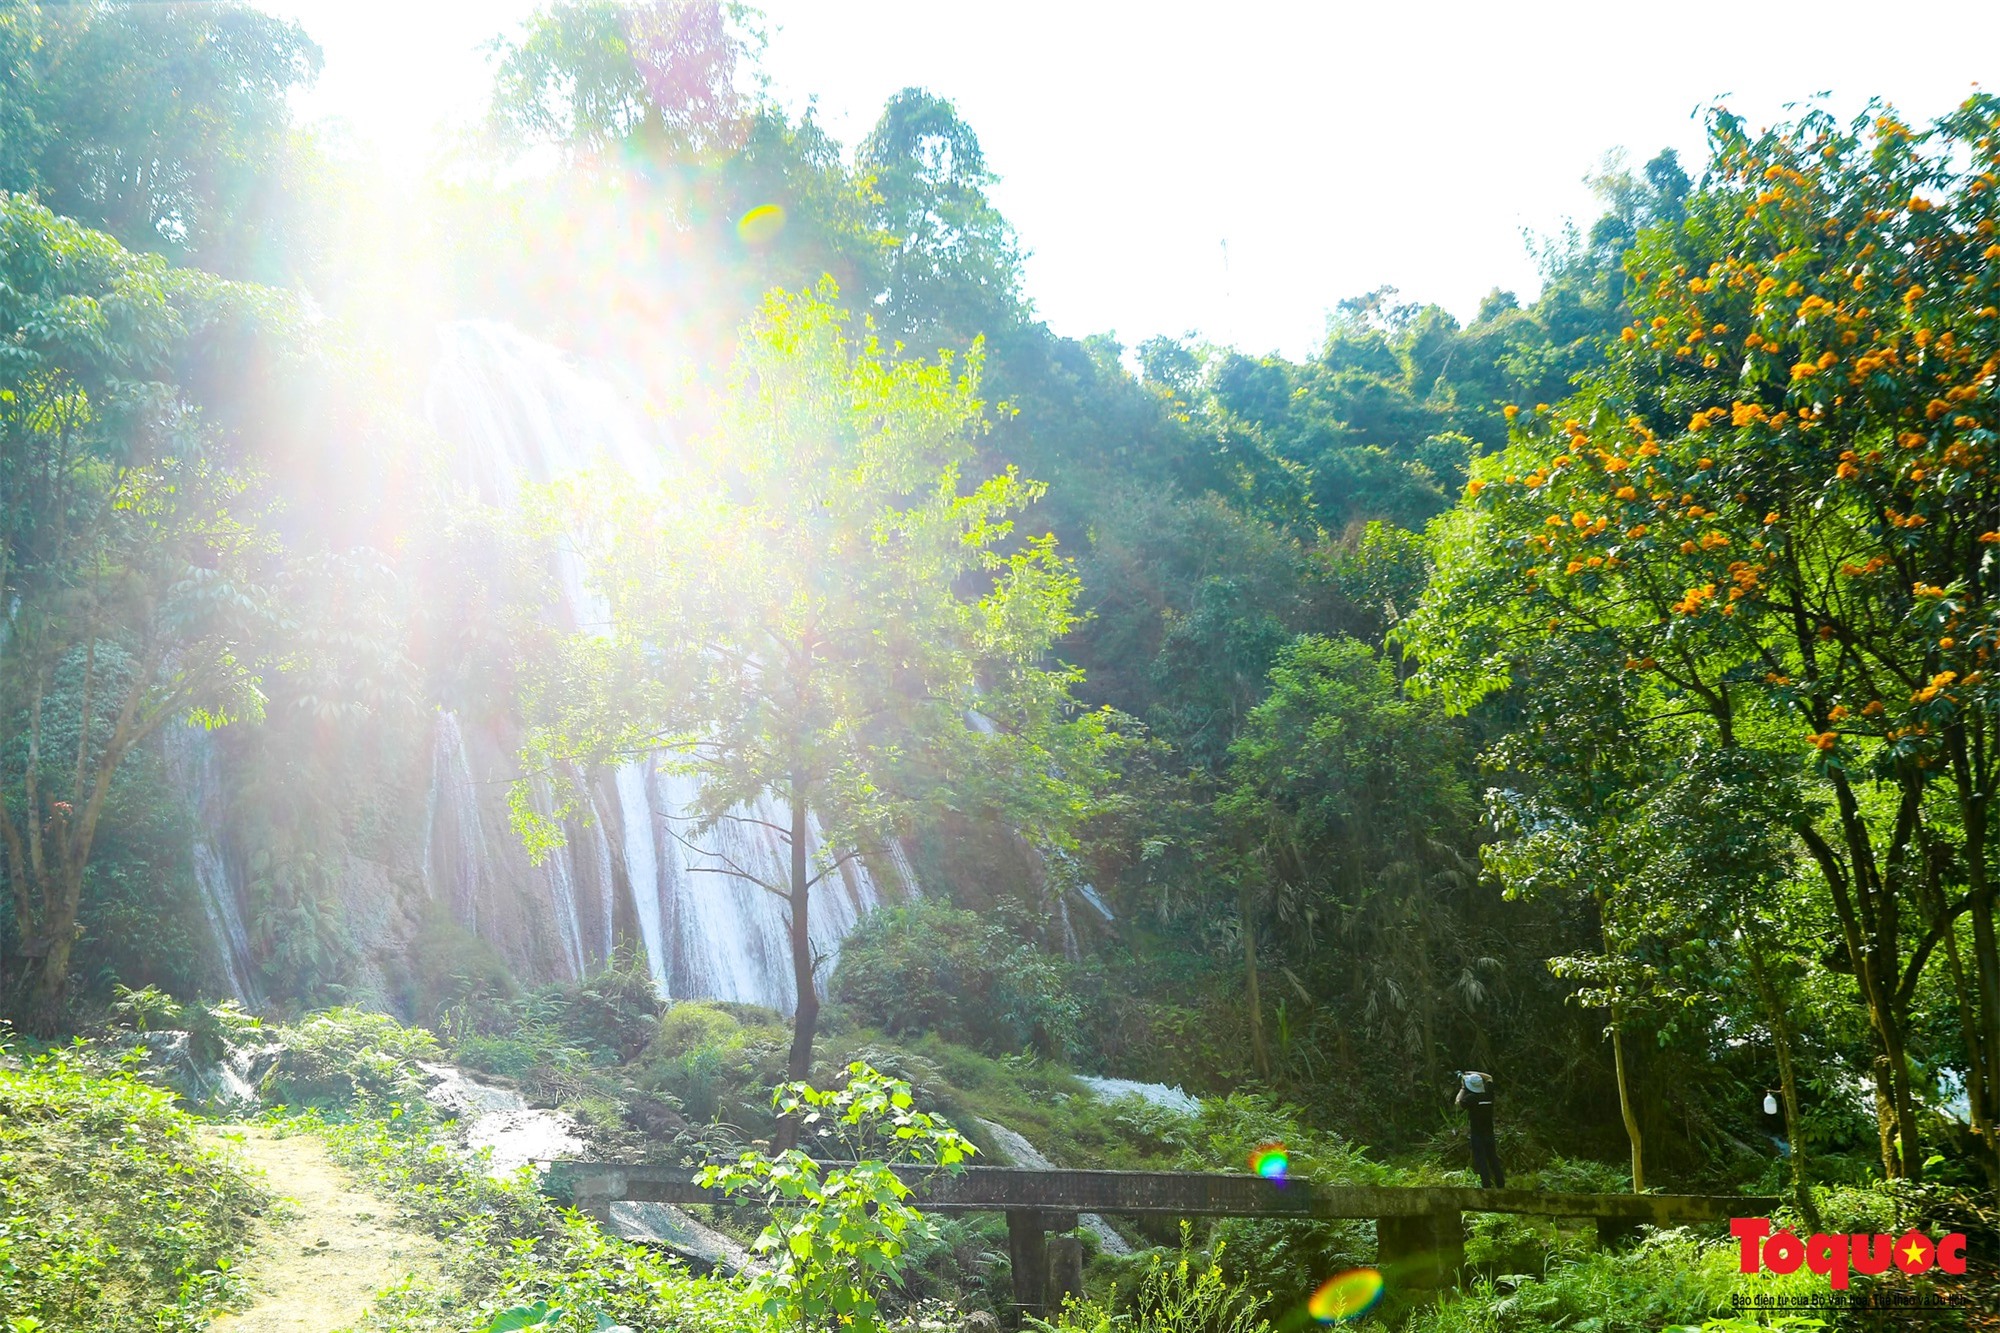 Khám phá thác Tạt Nàng đẹp quyến rũ giữa núi rừng Sơn La - Ảnh 16.